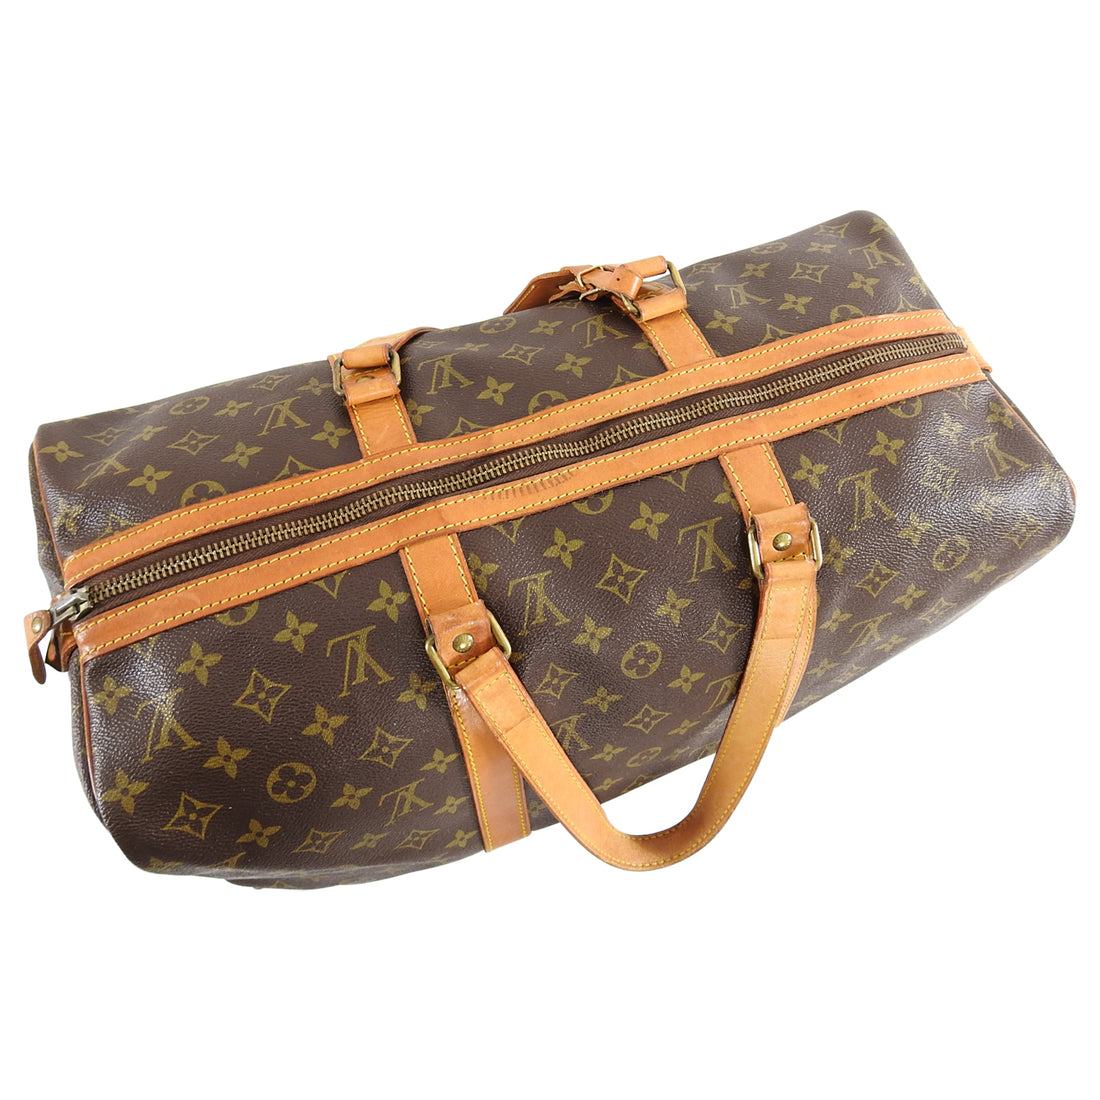 Authentic Louis Vuitton Duffle Bag for Sale in San Gabriel, CA